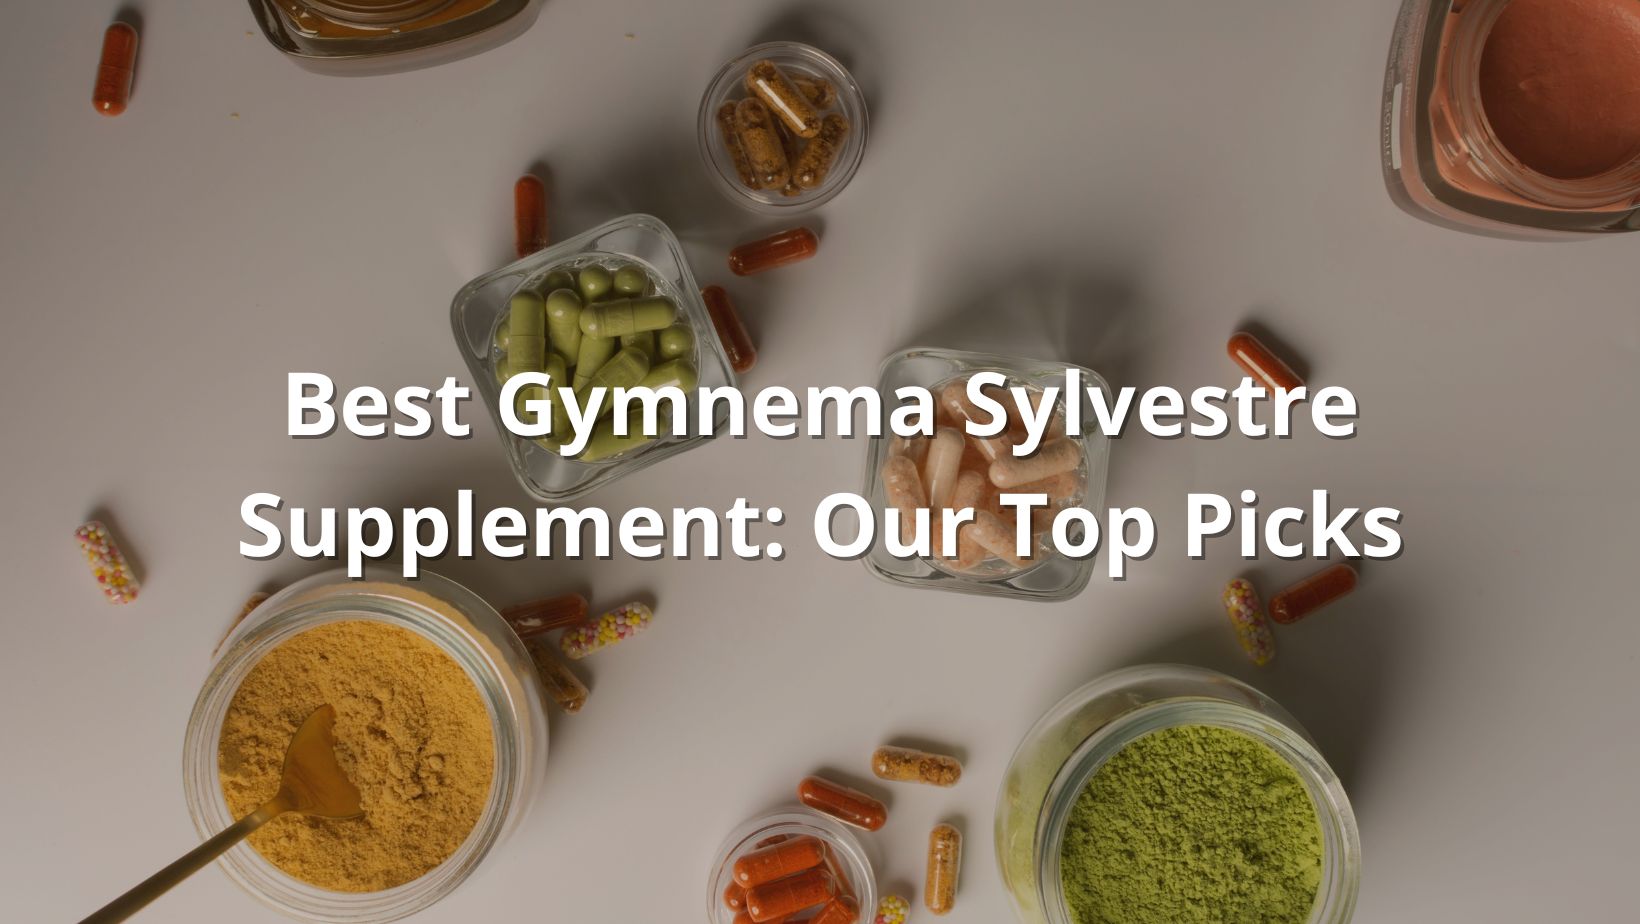 Best Gymnema Sylvestre Supplement featured image